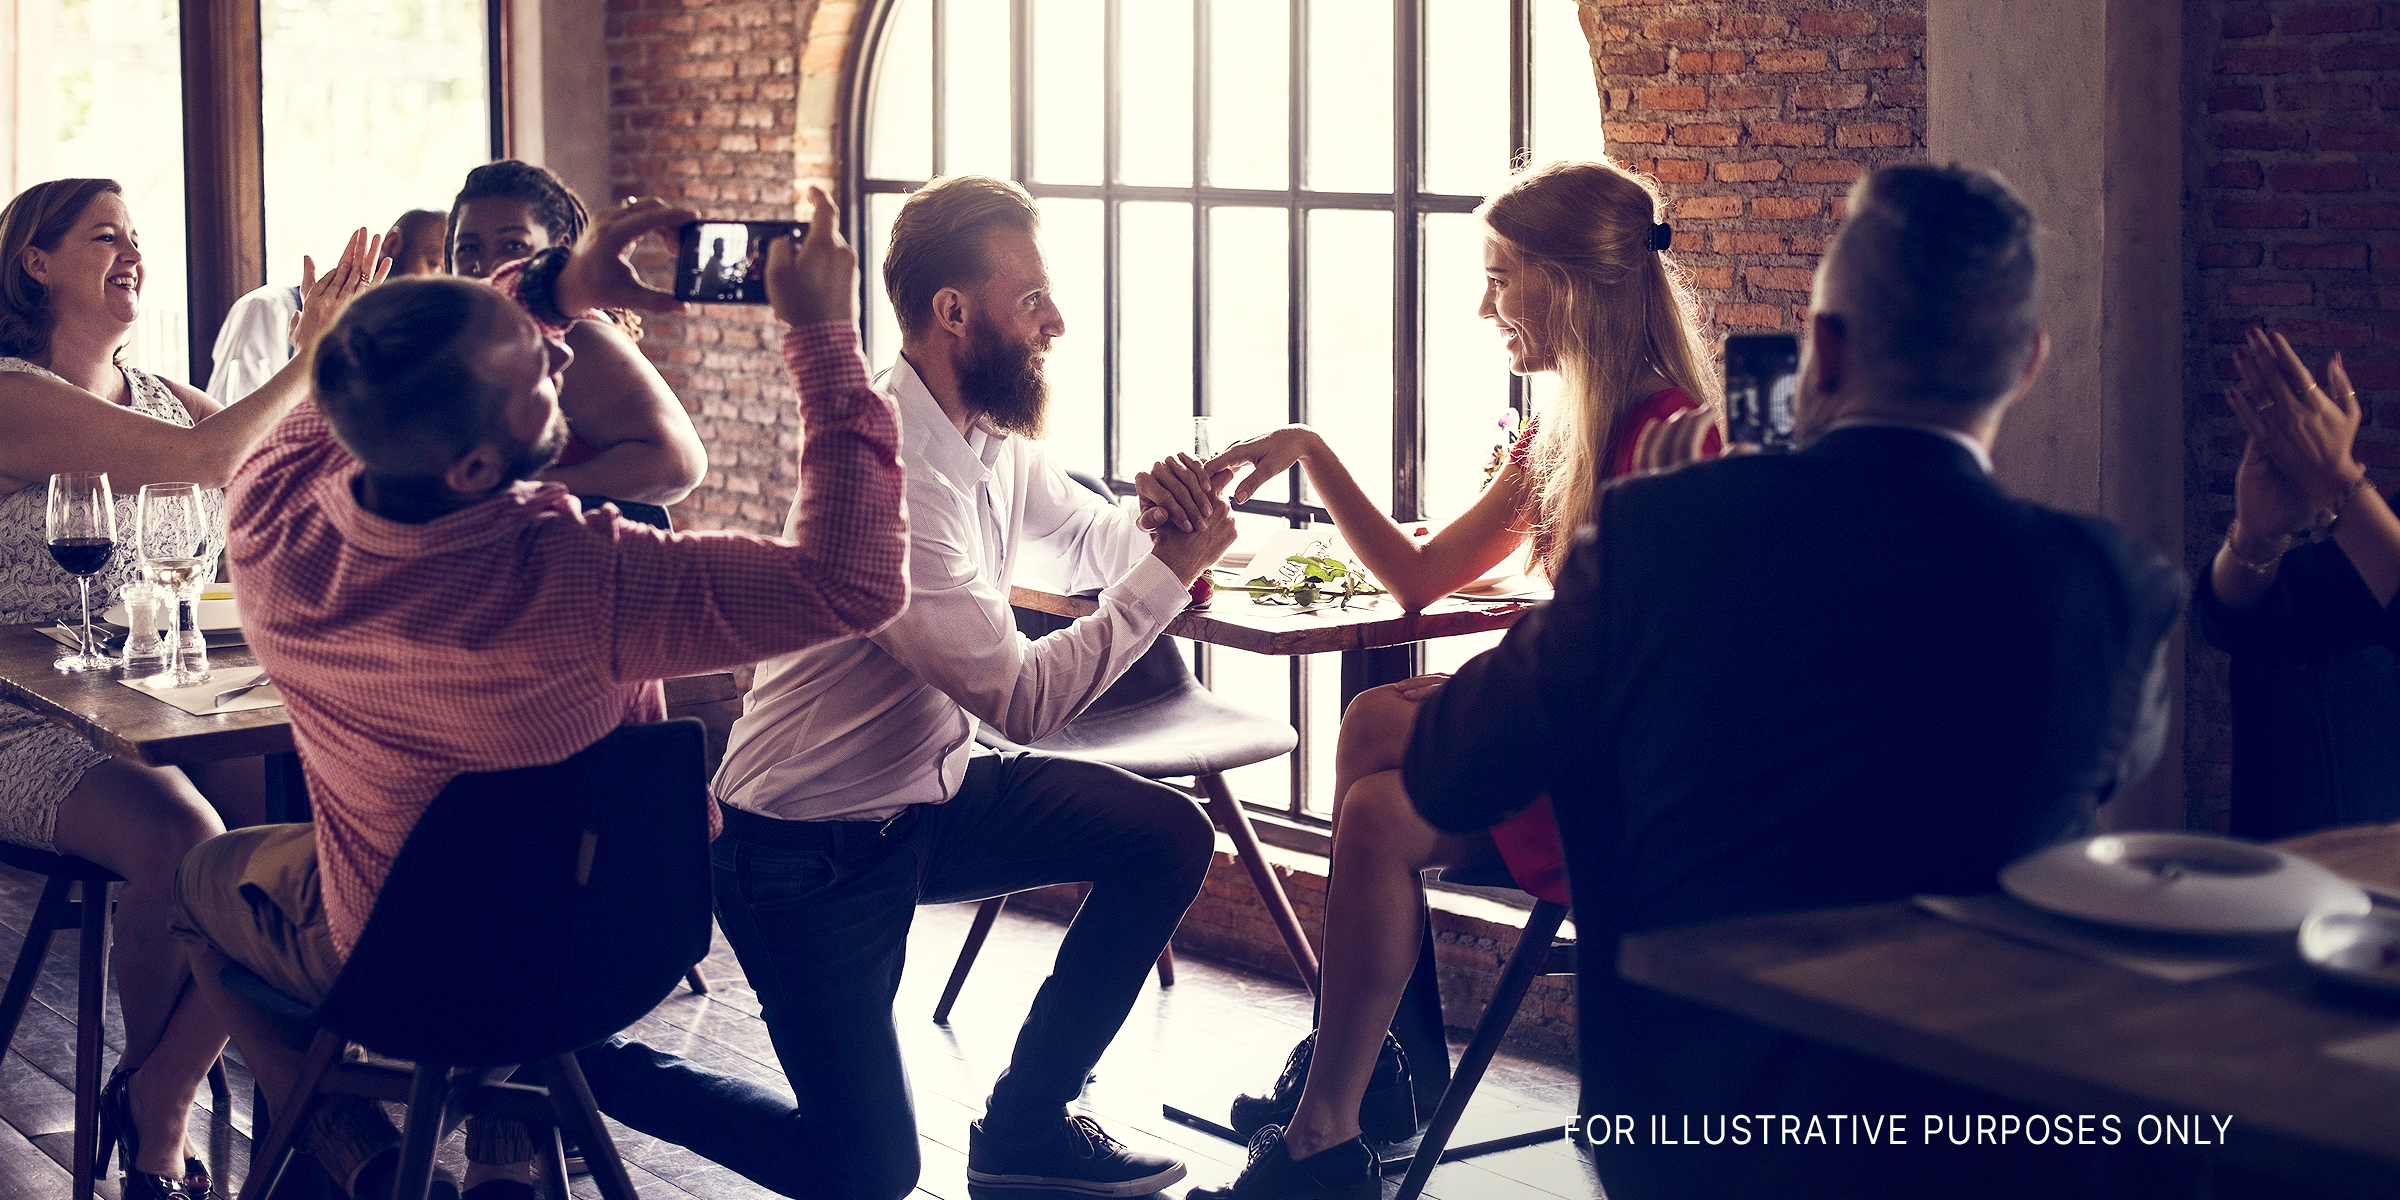 Ein Mann kniet in einem Restaurant und macht ihr einen Antrag. | Quelle: Shutterstock